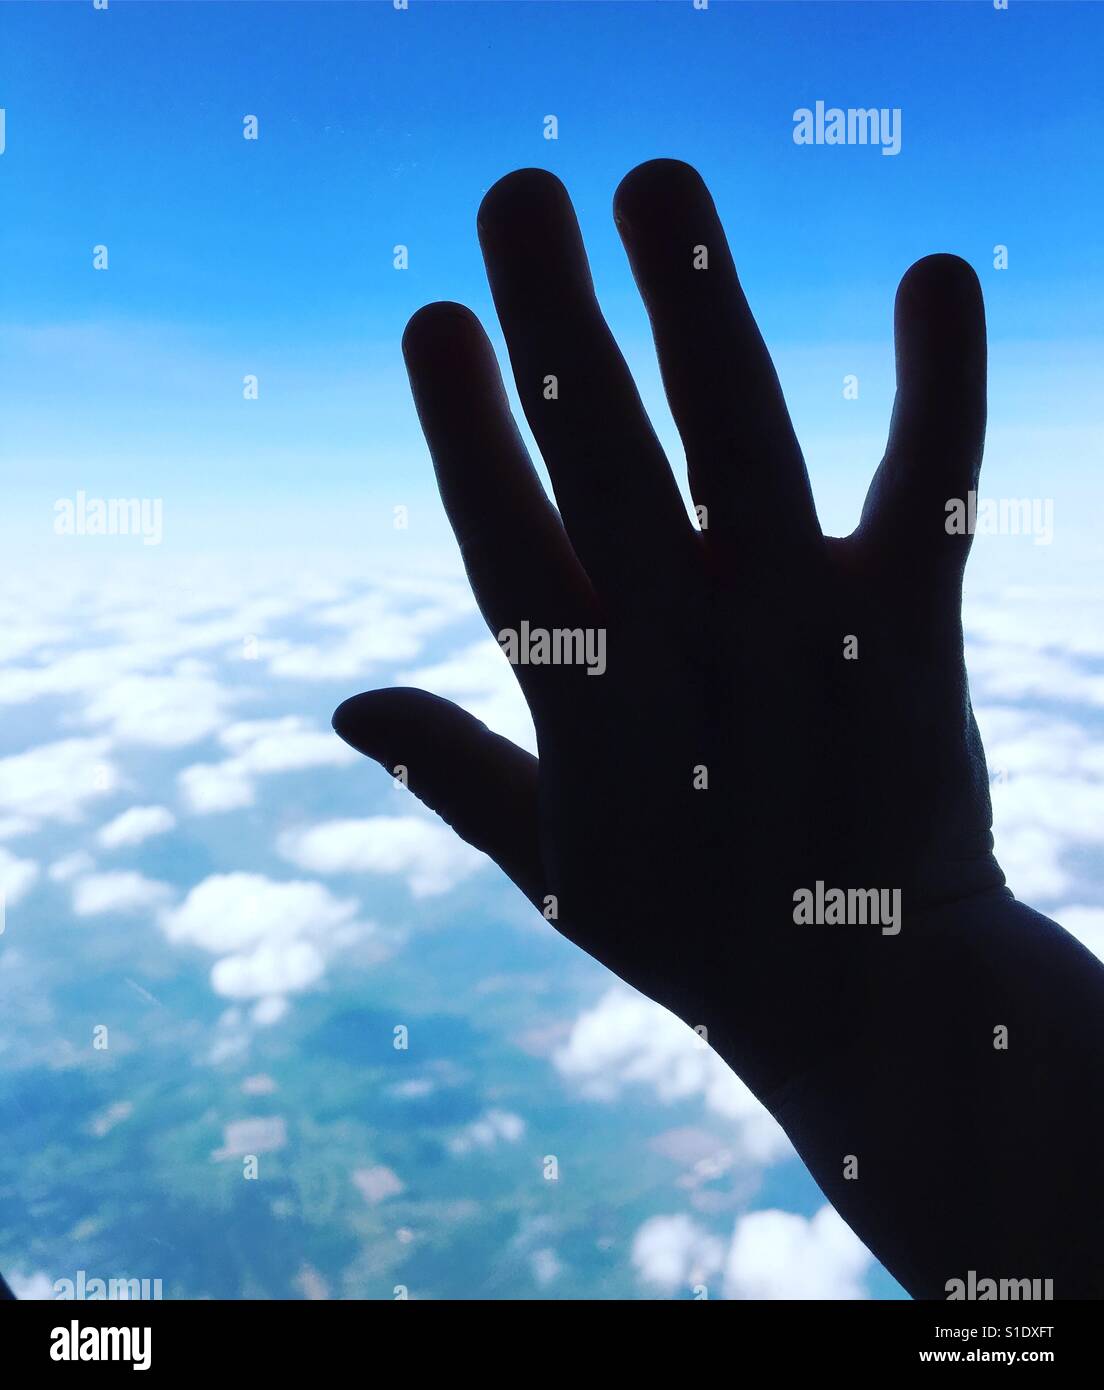 La mano de un niño contra la ventanilla de un avión, siluetas contra un cielo azul con nubes blancas esponjosas Foto de stock